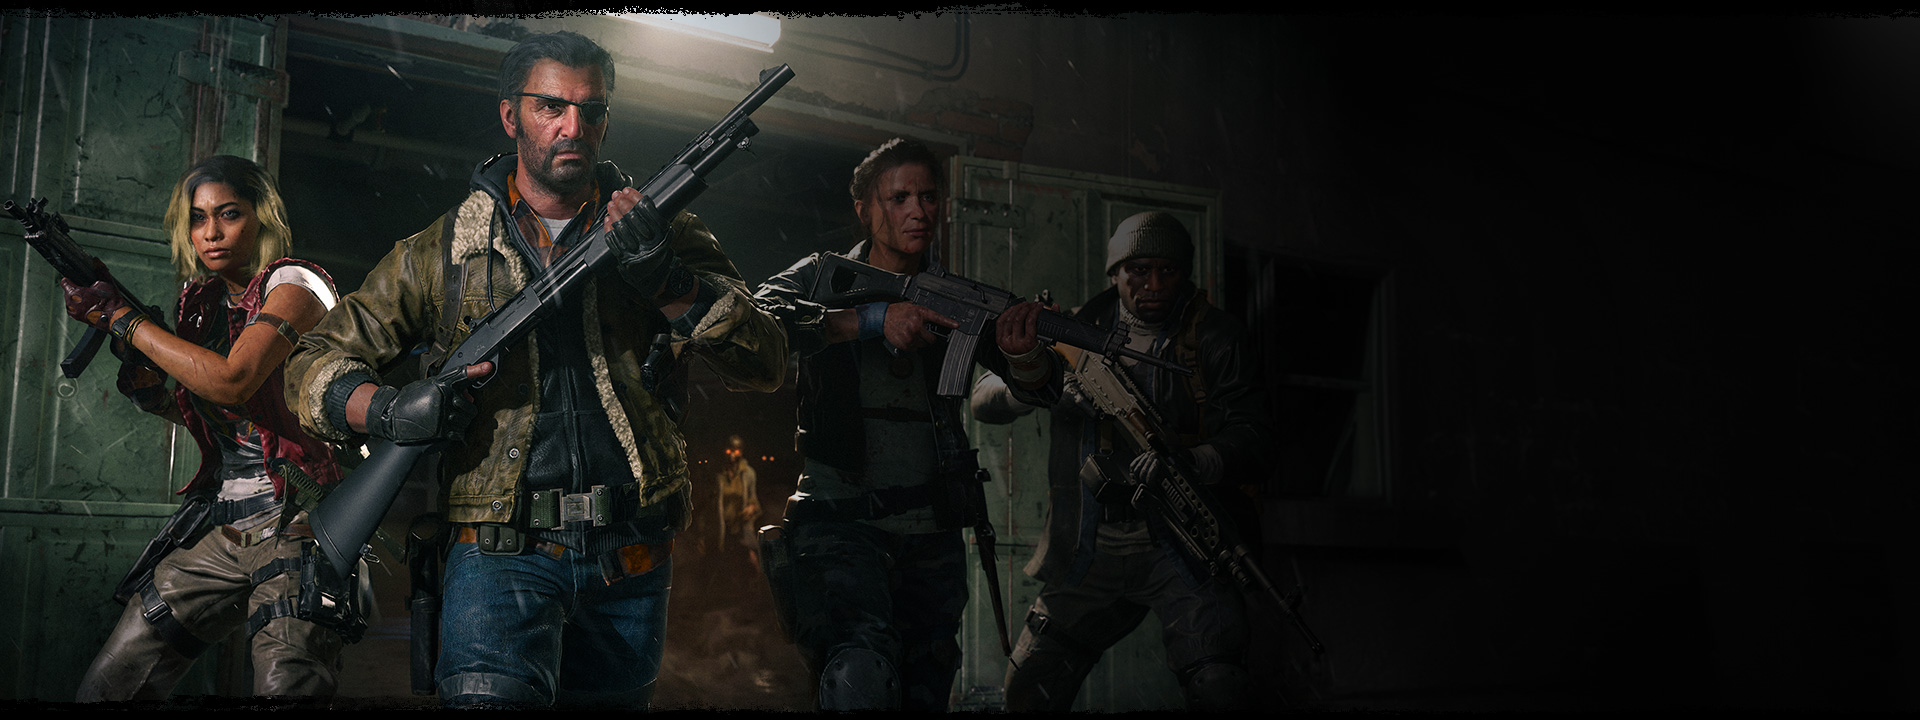 Vier Charaktere verlassen mit erhobenen Waffen ein Lagerhaus, während hinter ihnen ein Zombie mit orange leuchtenden Augen steht.